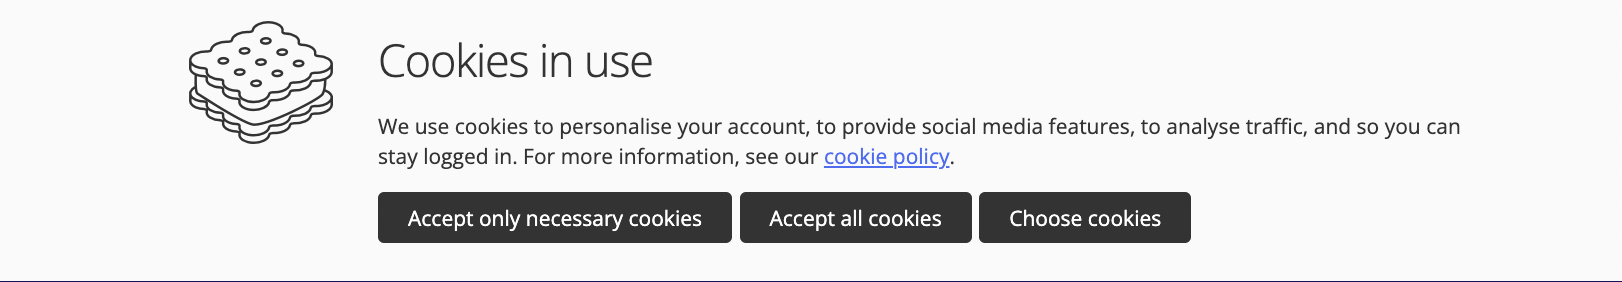 Cookies in user banner